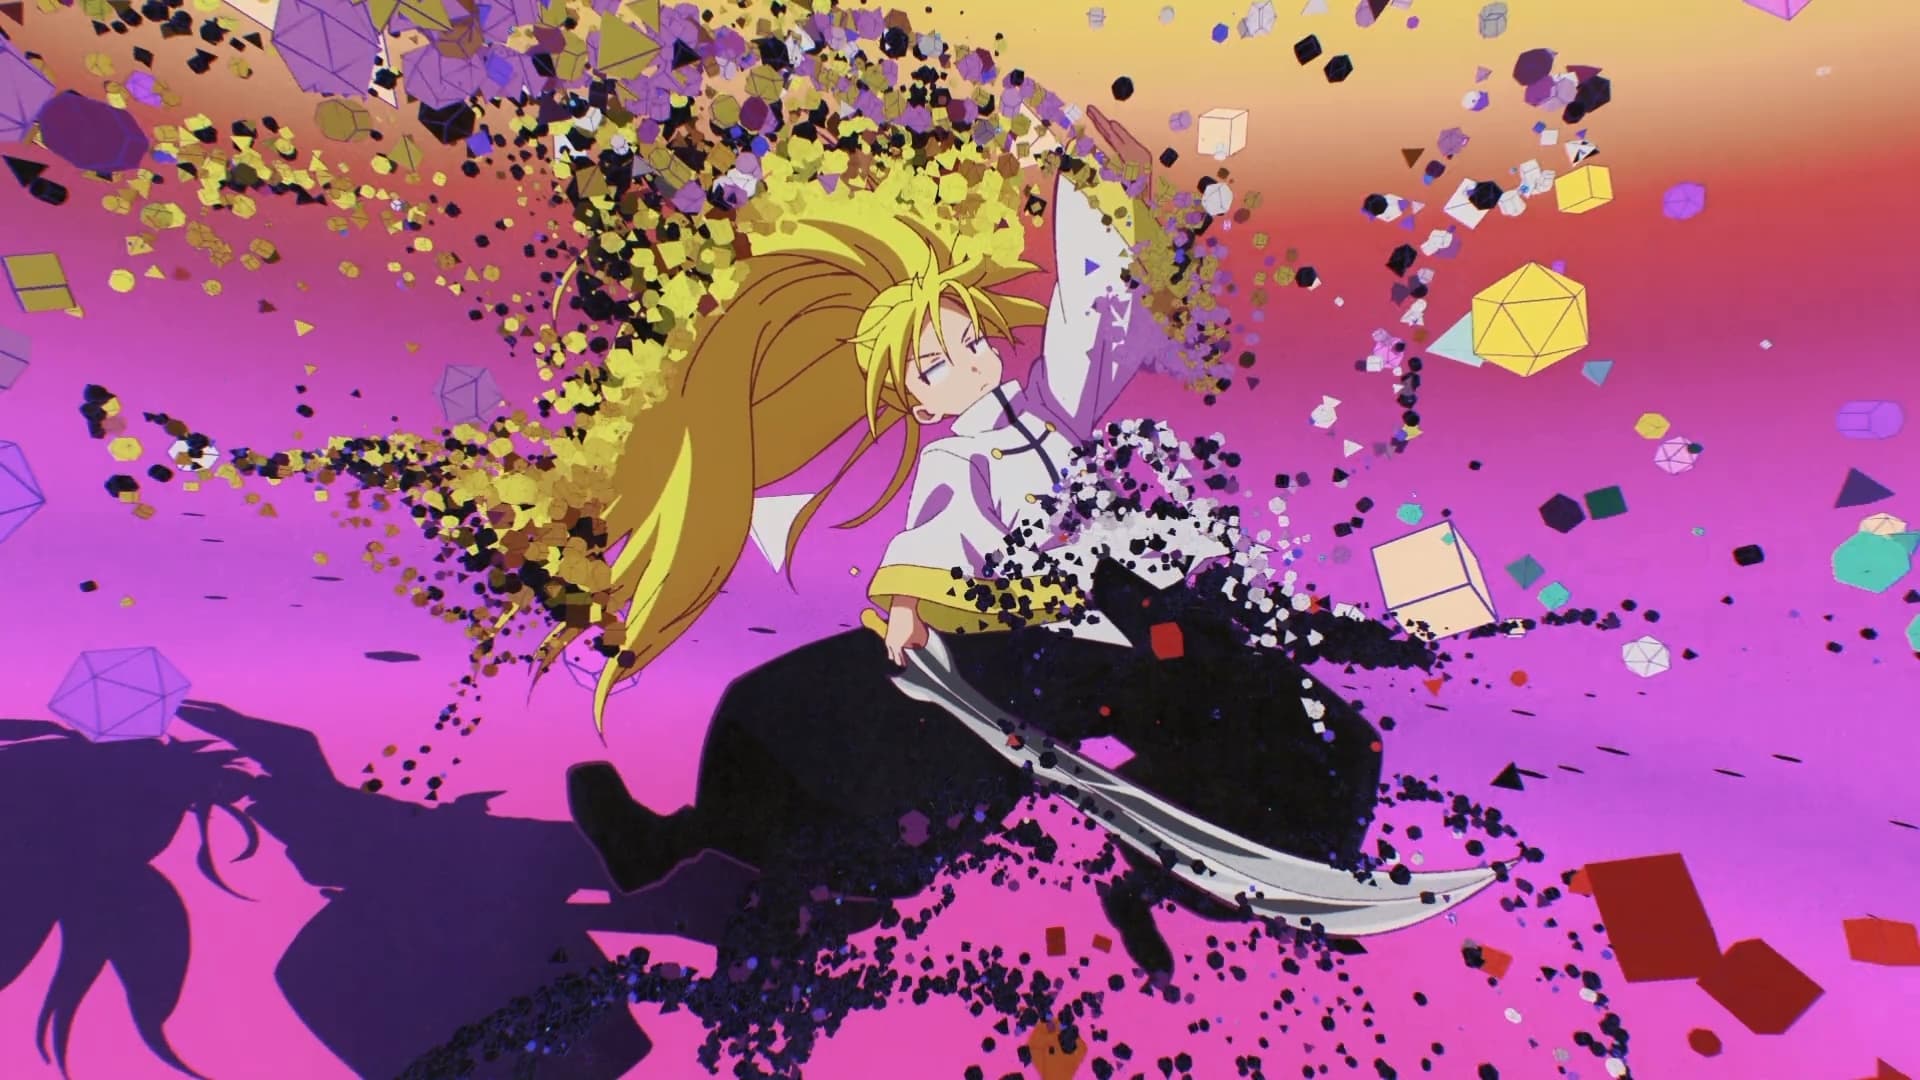 Com estreia já garantida na Crunchyroll, The Idaten Deities Know Only Peace  lança vídeo com o clipe de encerramento do anime - Crunchyroll Notícias